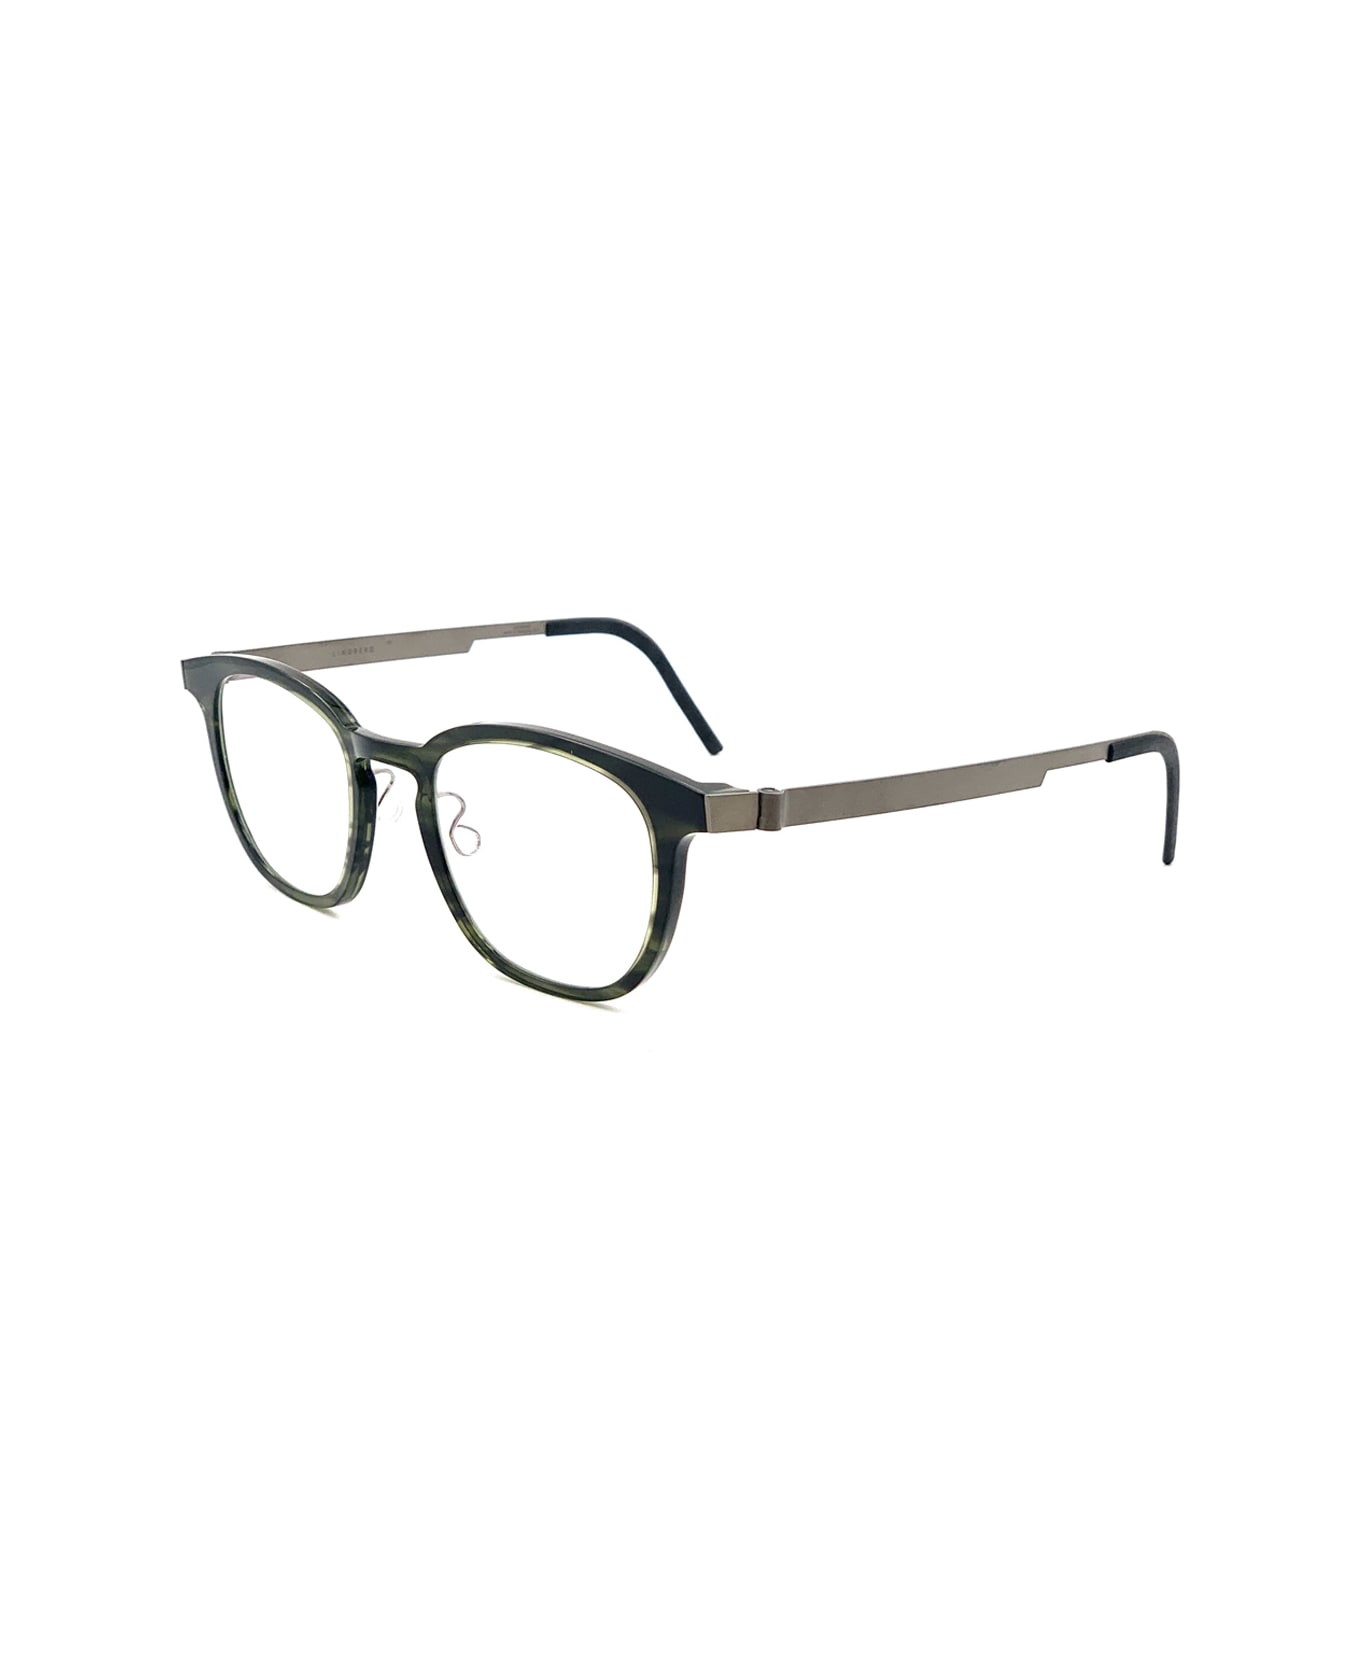 LINDBERG Acetanium 1051 Glasses - Verde